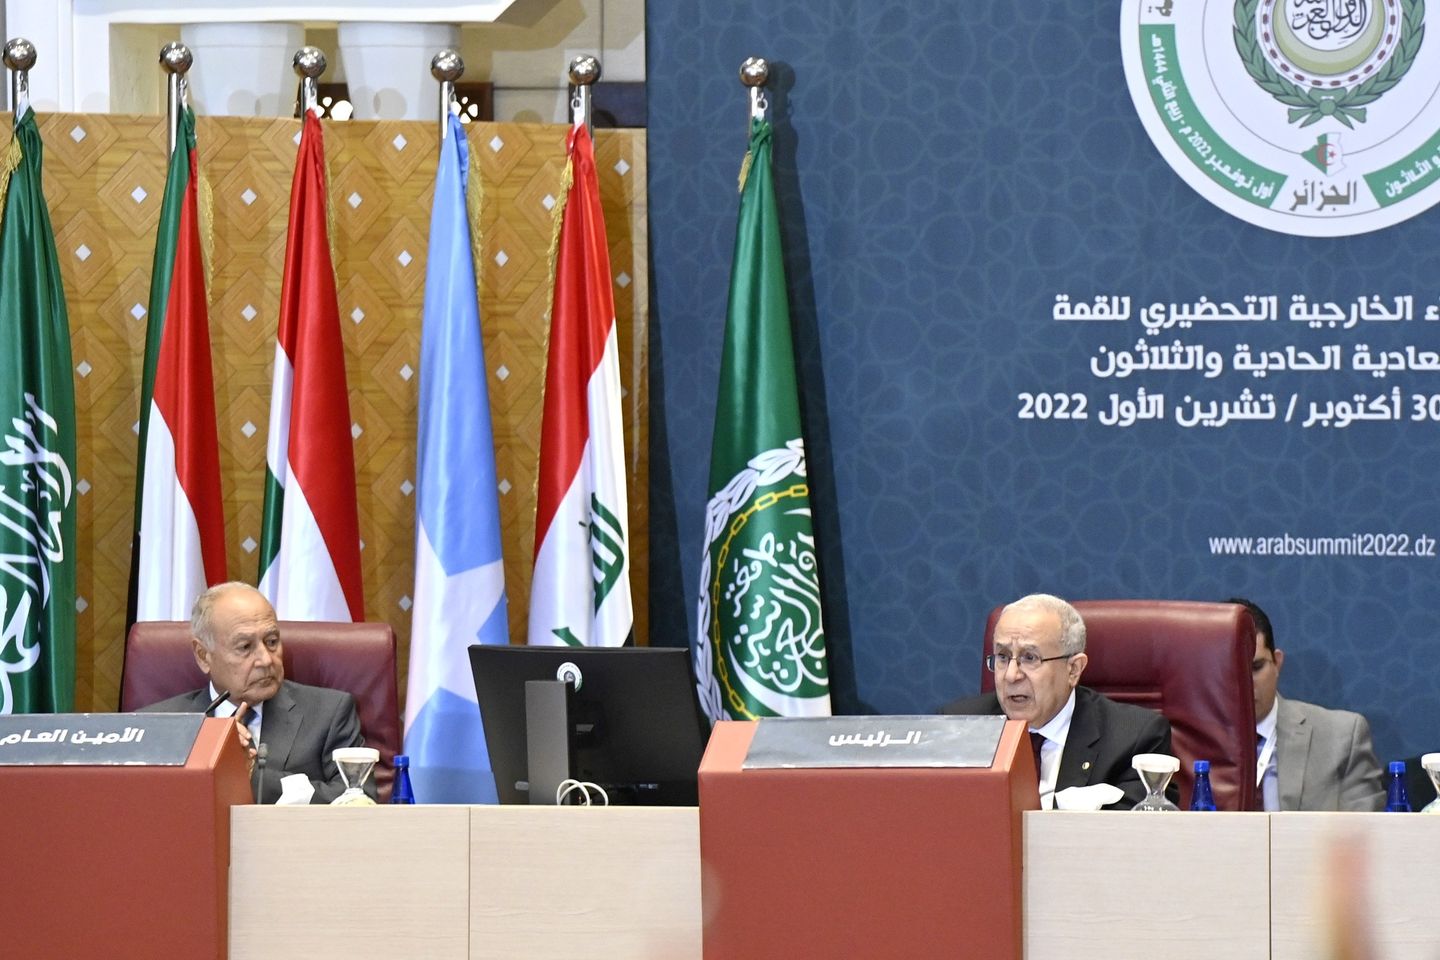 القمة العربية الـ 31 : أشغال اجتماع وزراء الخارجية العرب التحضيري تتواصل اليوم الأحد